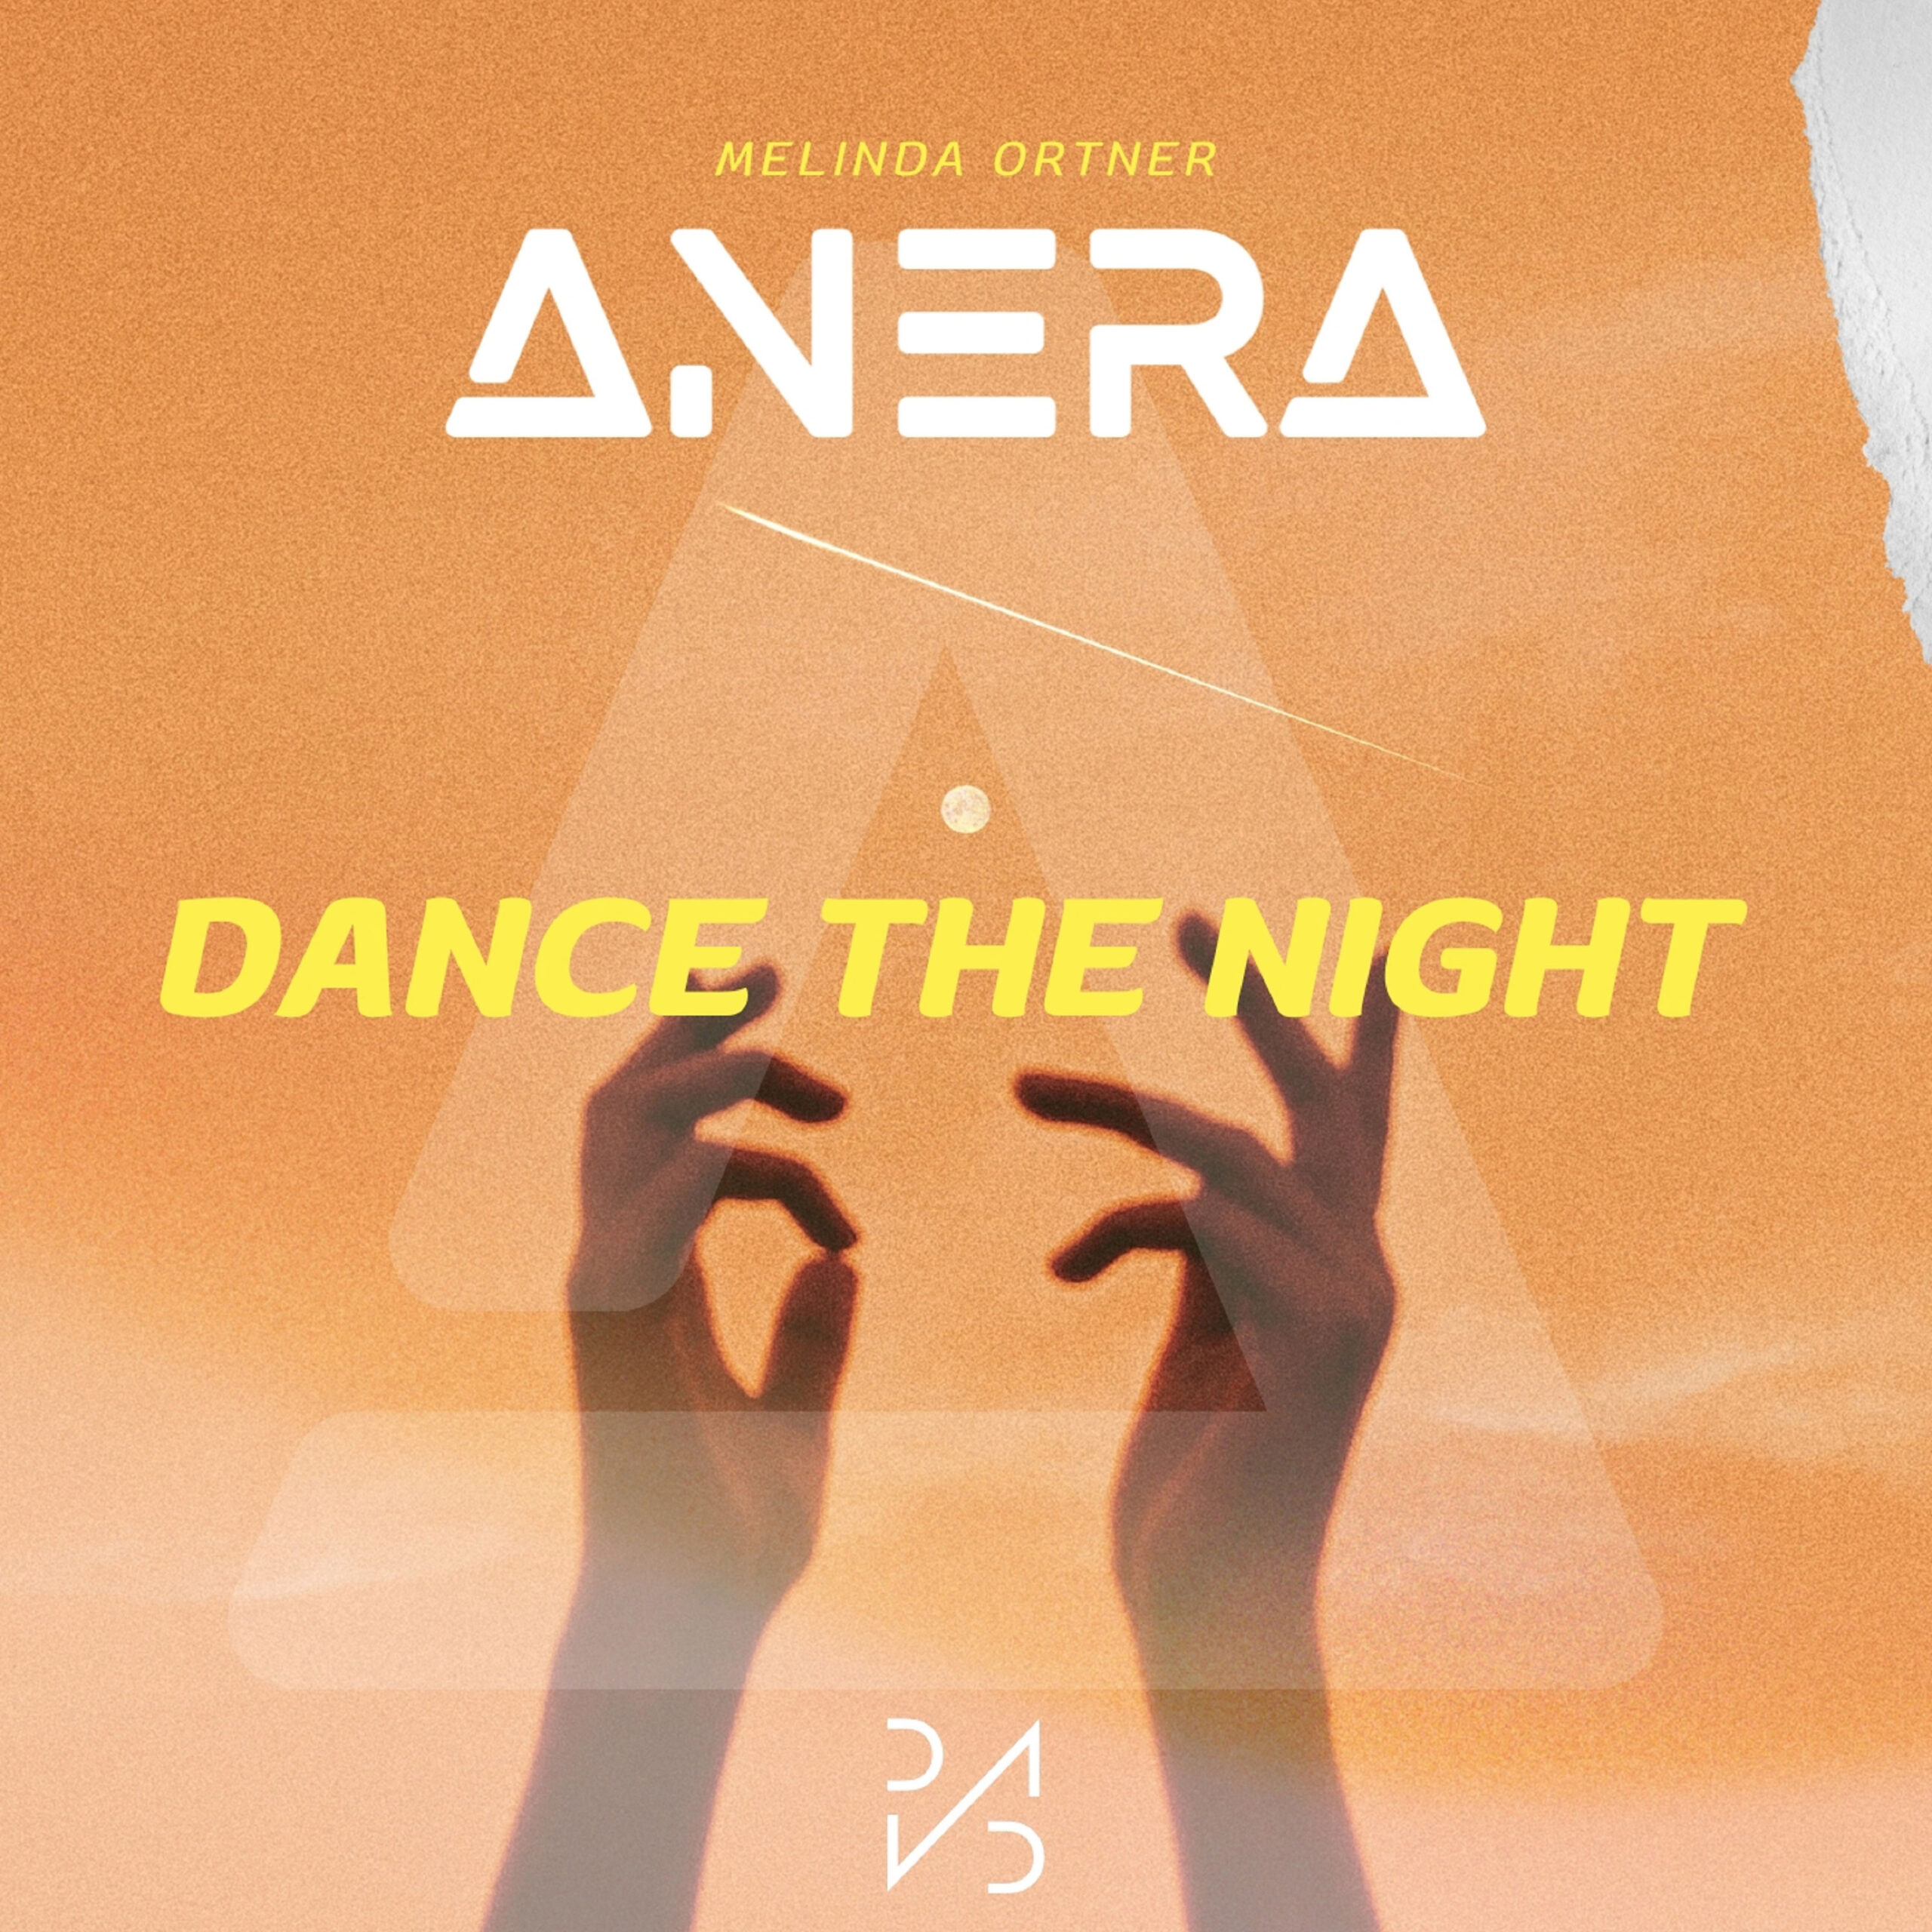  “Dance the Night”: El nuevo hit electrónico de Anera con Melinda Ortner